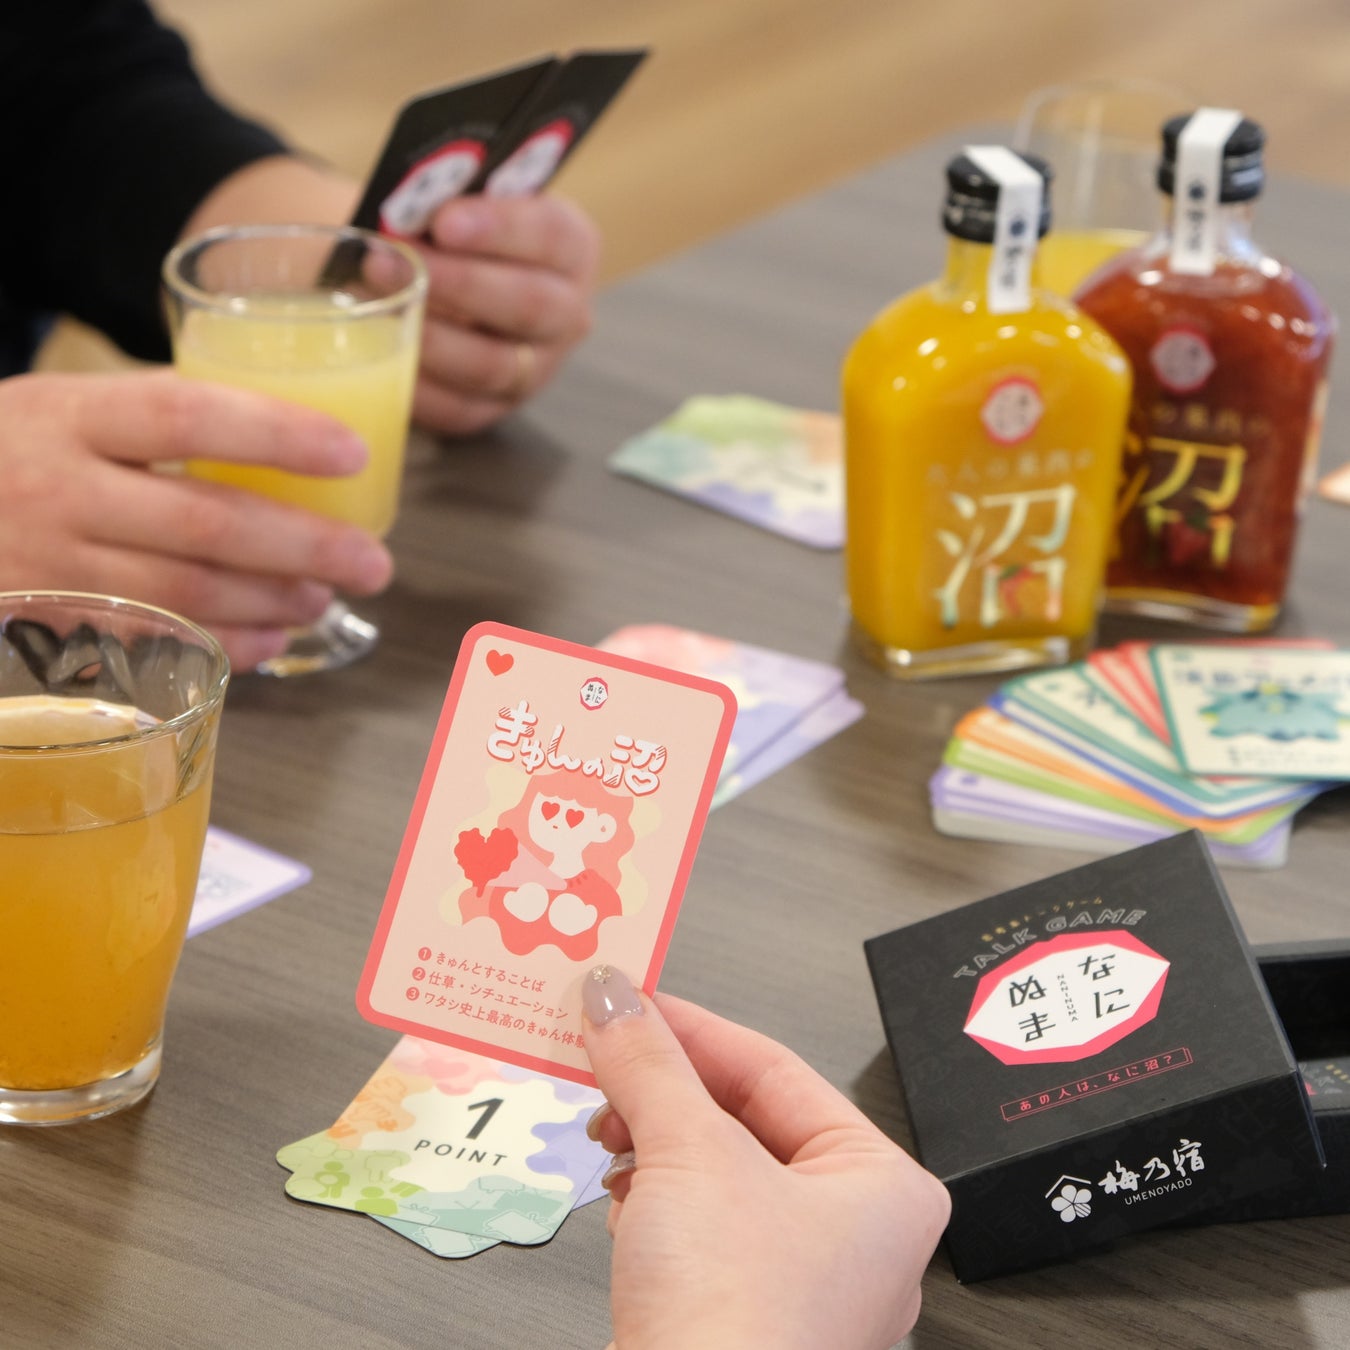 新しい酒文化を創造する蔵 梅乃宿酒造から、お酒の席をもっと楽しめるオリジナルトークゲーム付きセット(福箱)を発売